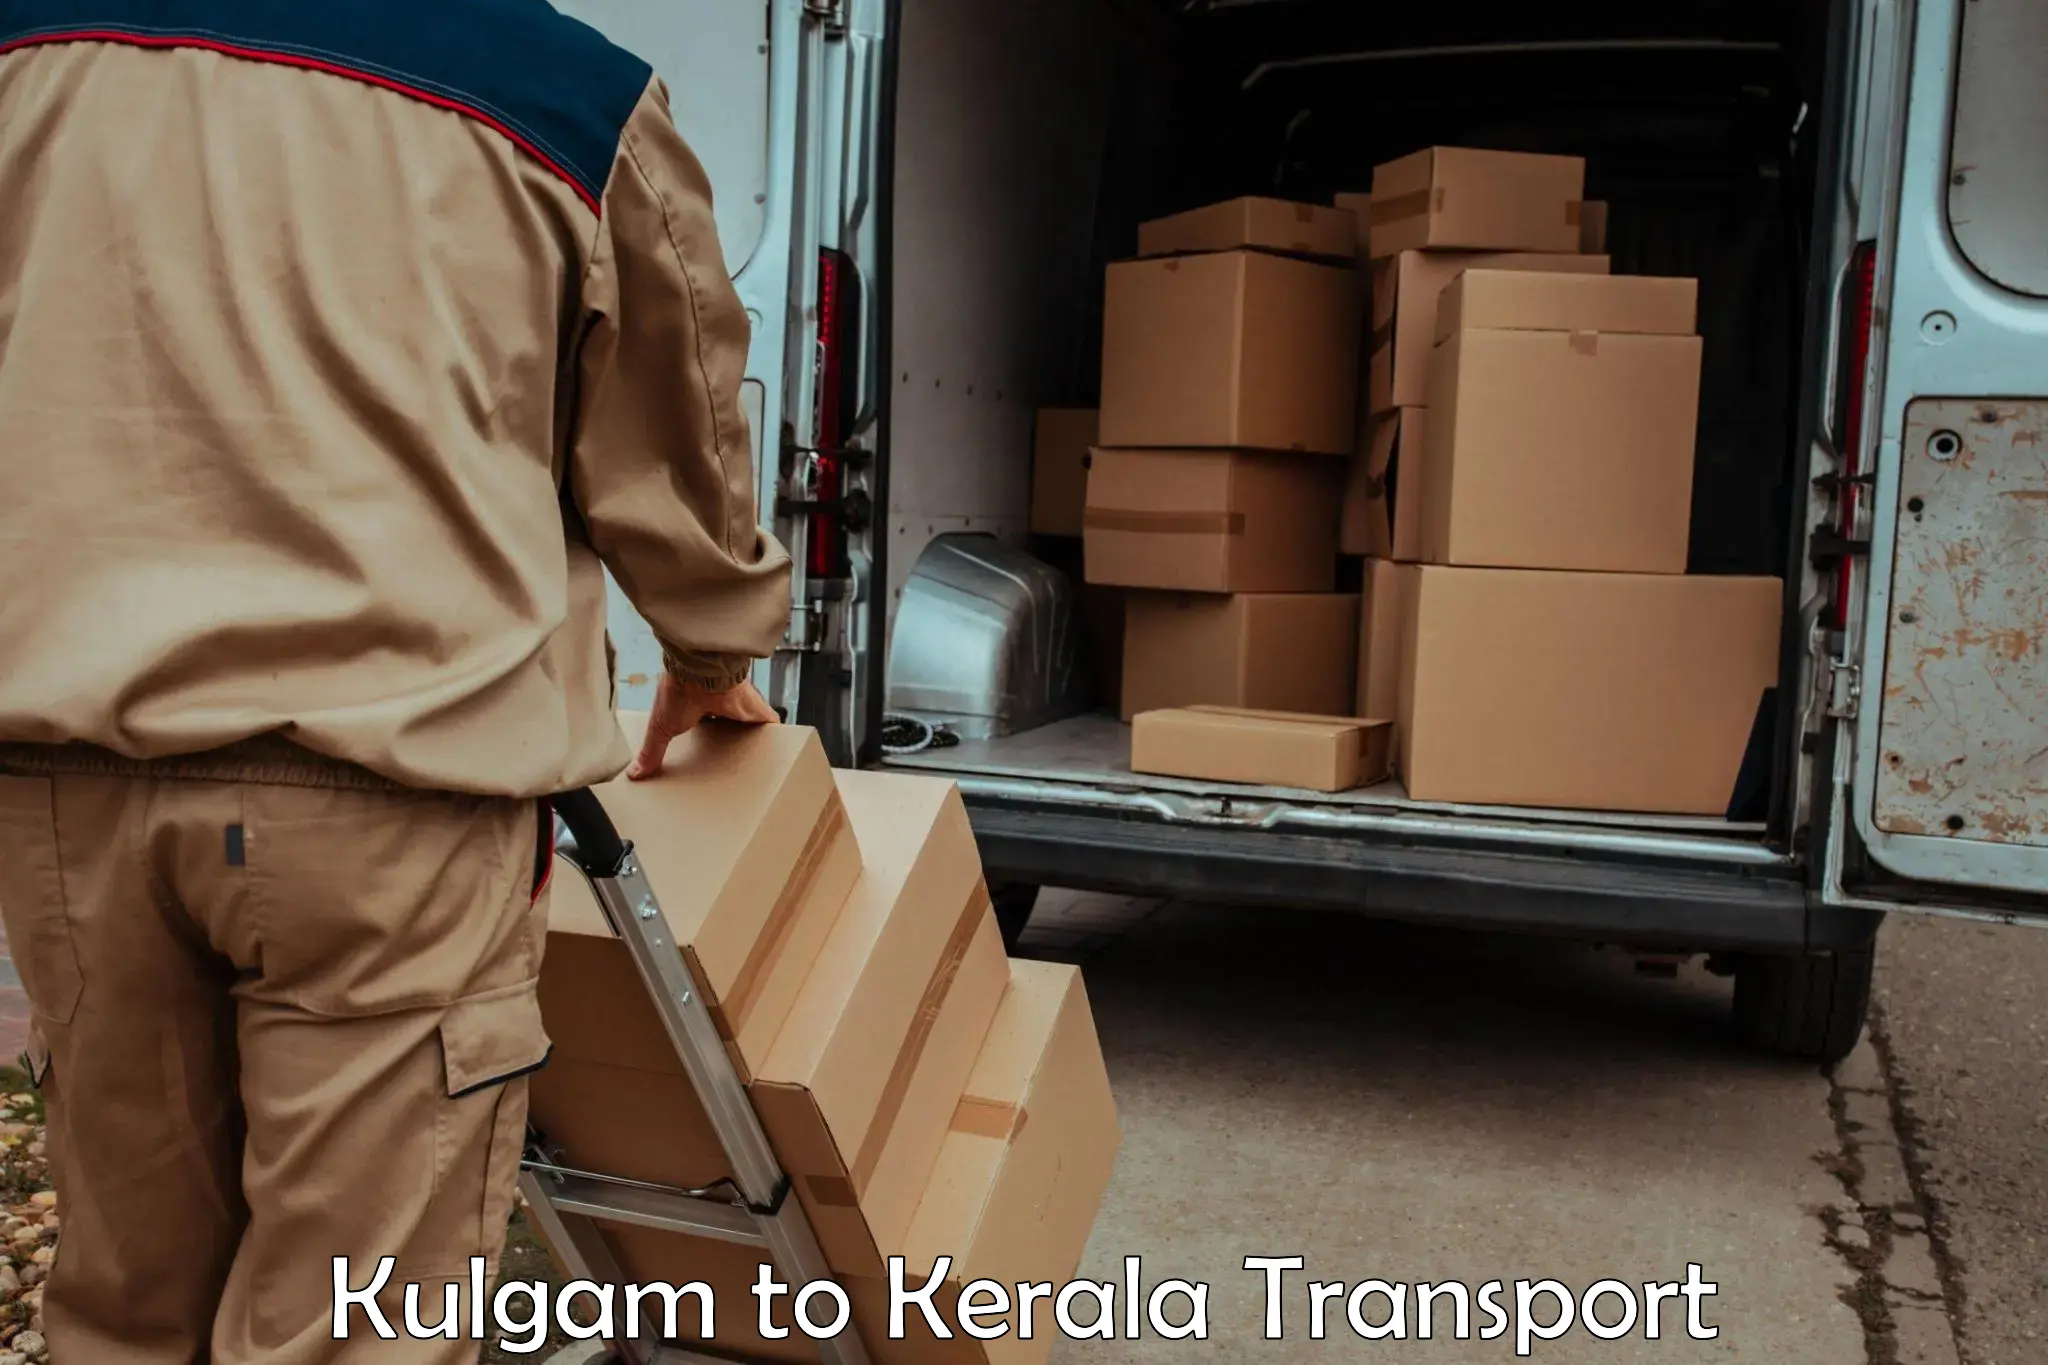 Door to door transport services Kulgam to Kottarakkara